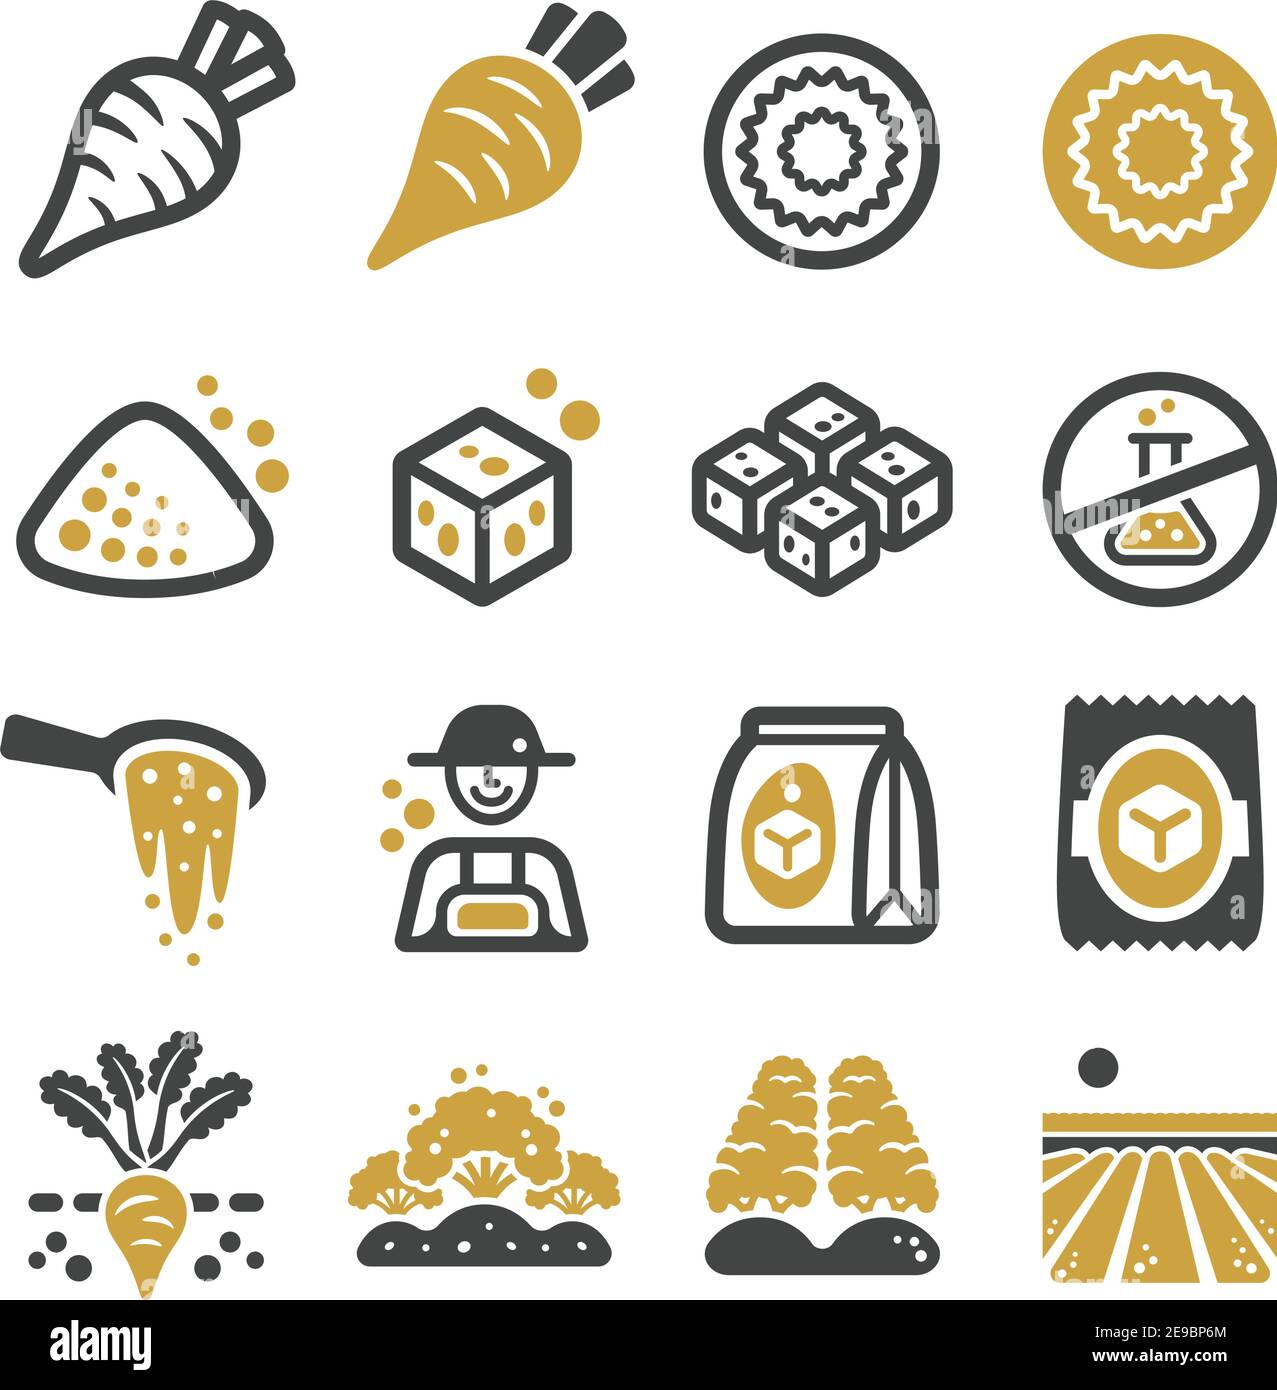 jeu d'icônes de betterave à sucre et de produit, vecteur et illustration Illustration de Vecteur